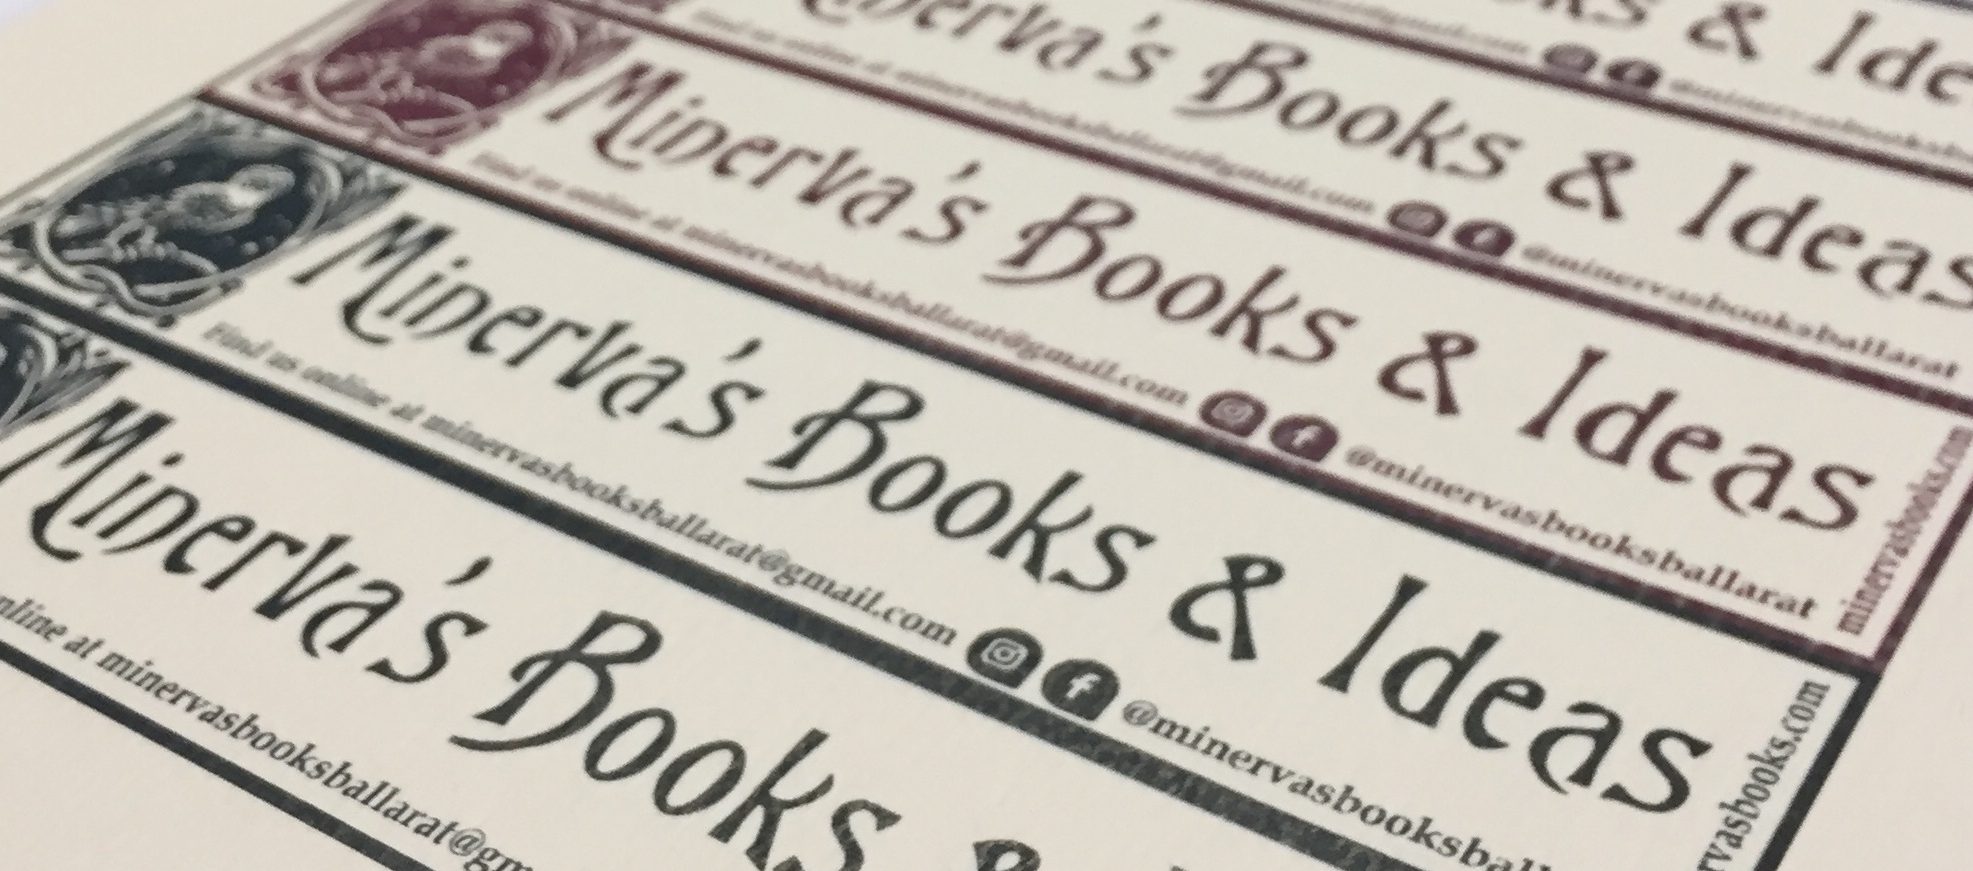 Minerva's Books & Ideas